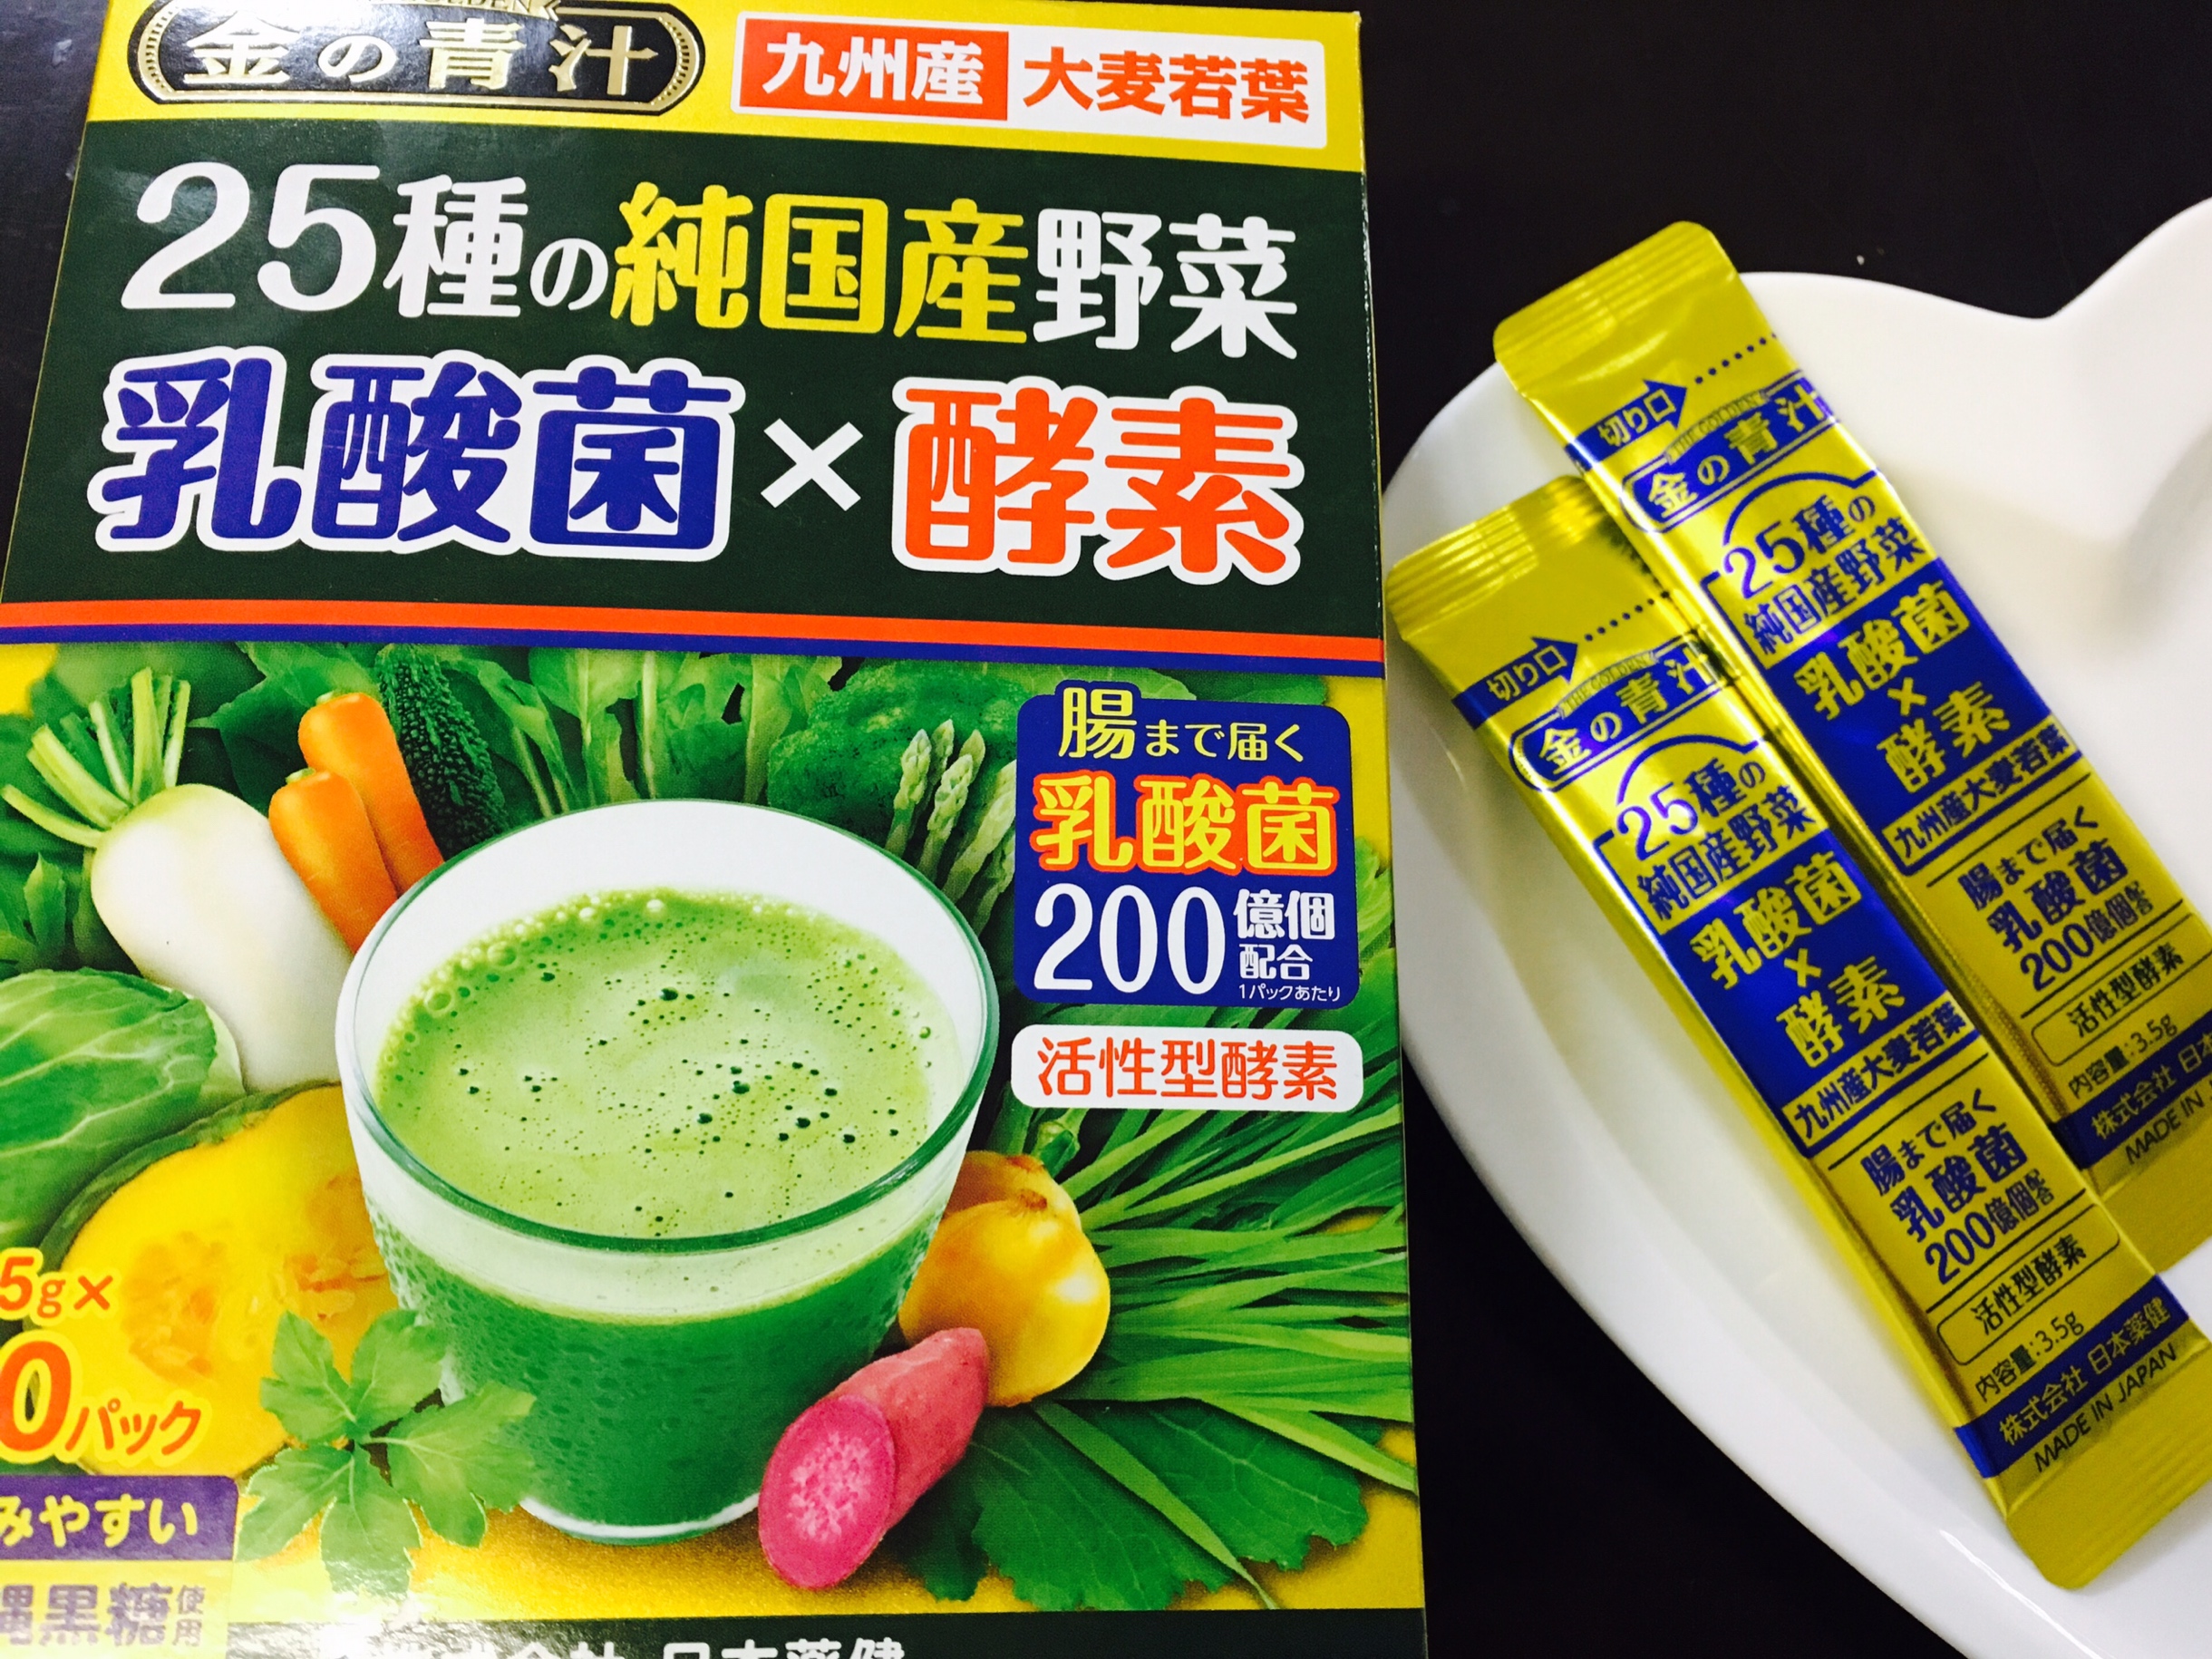 日本薬健 25種の純国産野菜 乳酸菌×酵素 60包 k755Al7LcJ, プロテイン - saddam.com.br